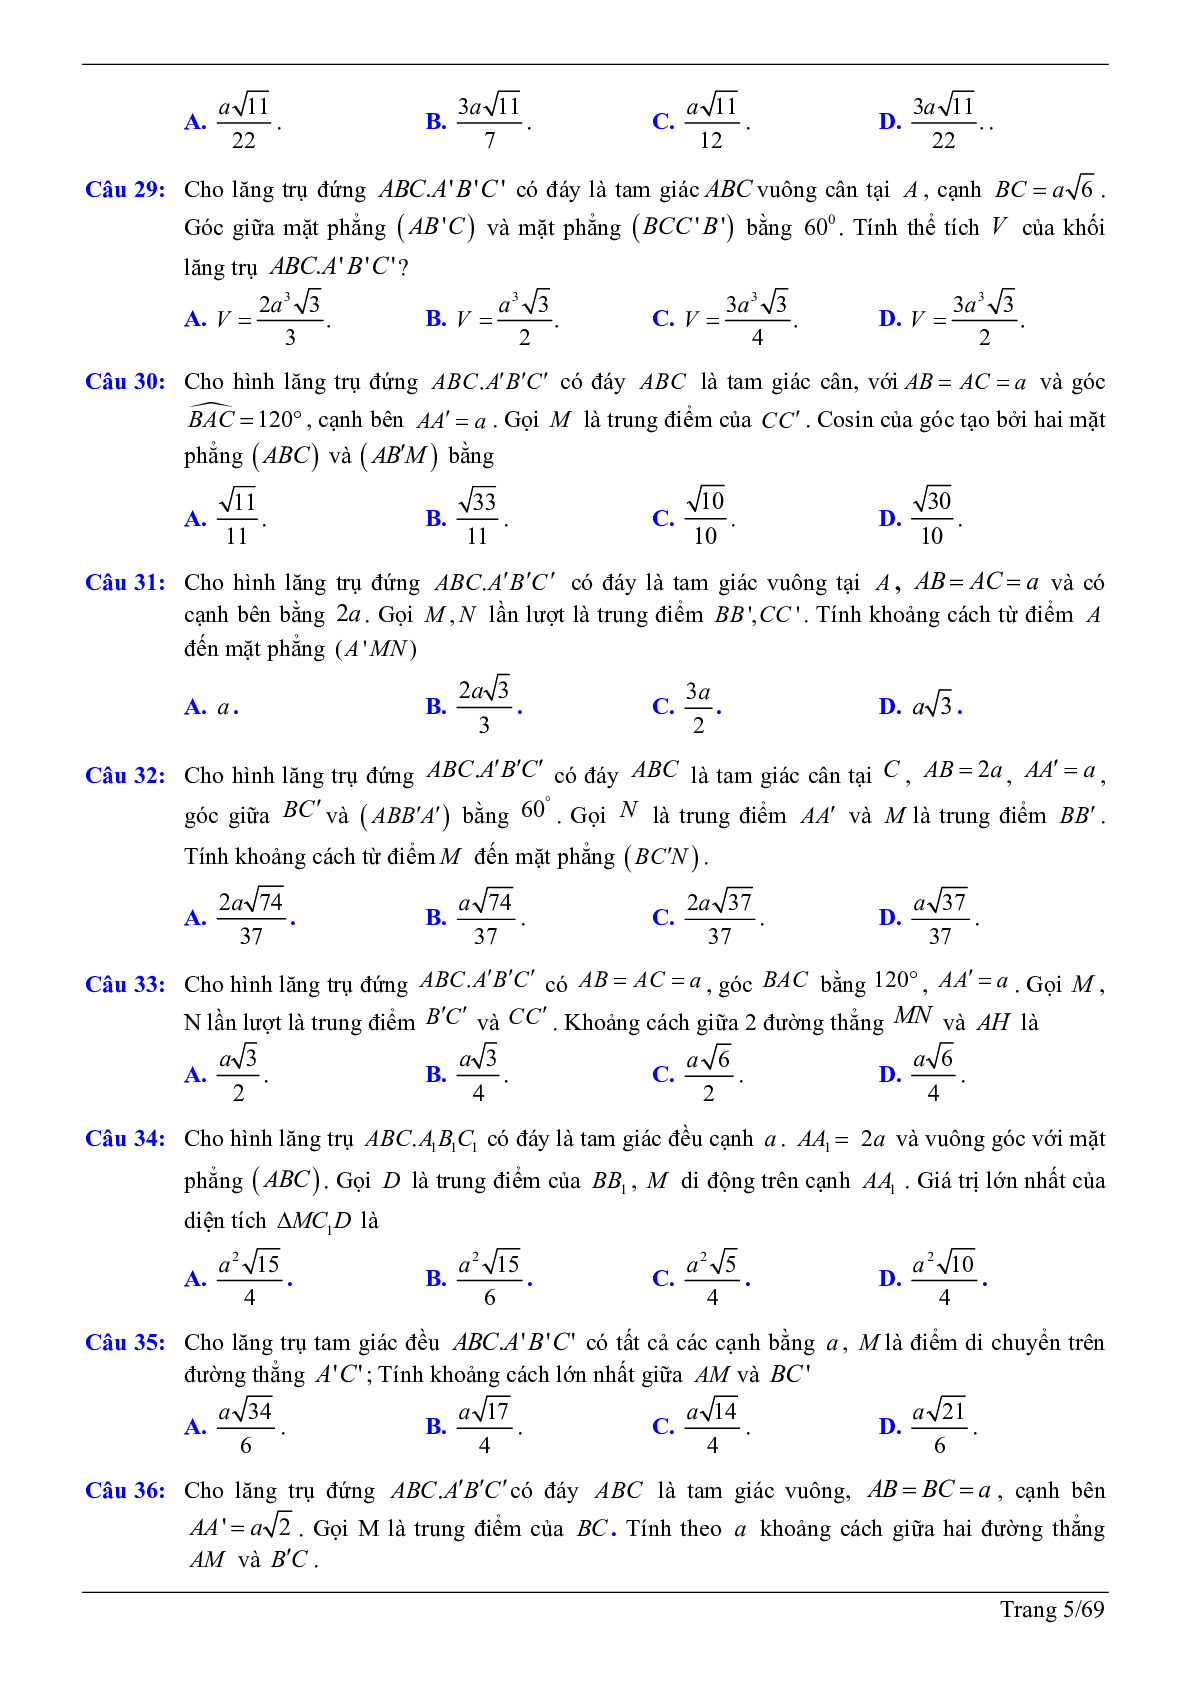 50 câu trắc nghiệm sử dụng phương pháp tọa độ giải bài toán hình học không gian - có đáp án chi tiết (trang 5)